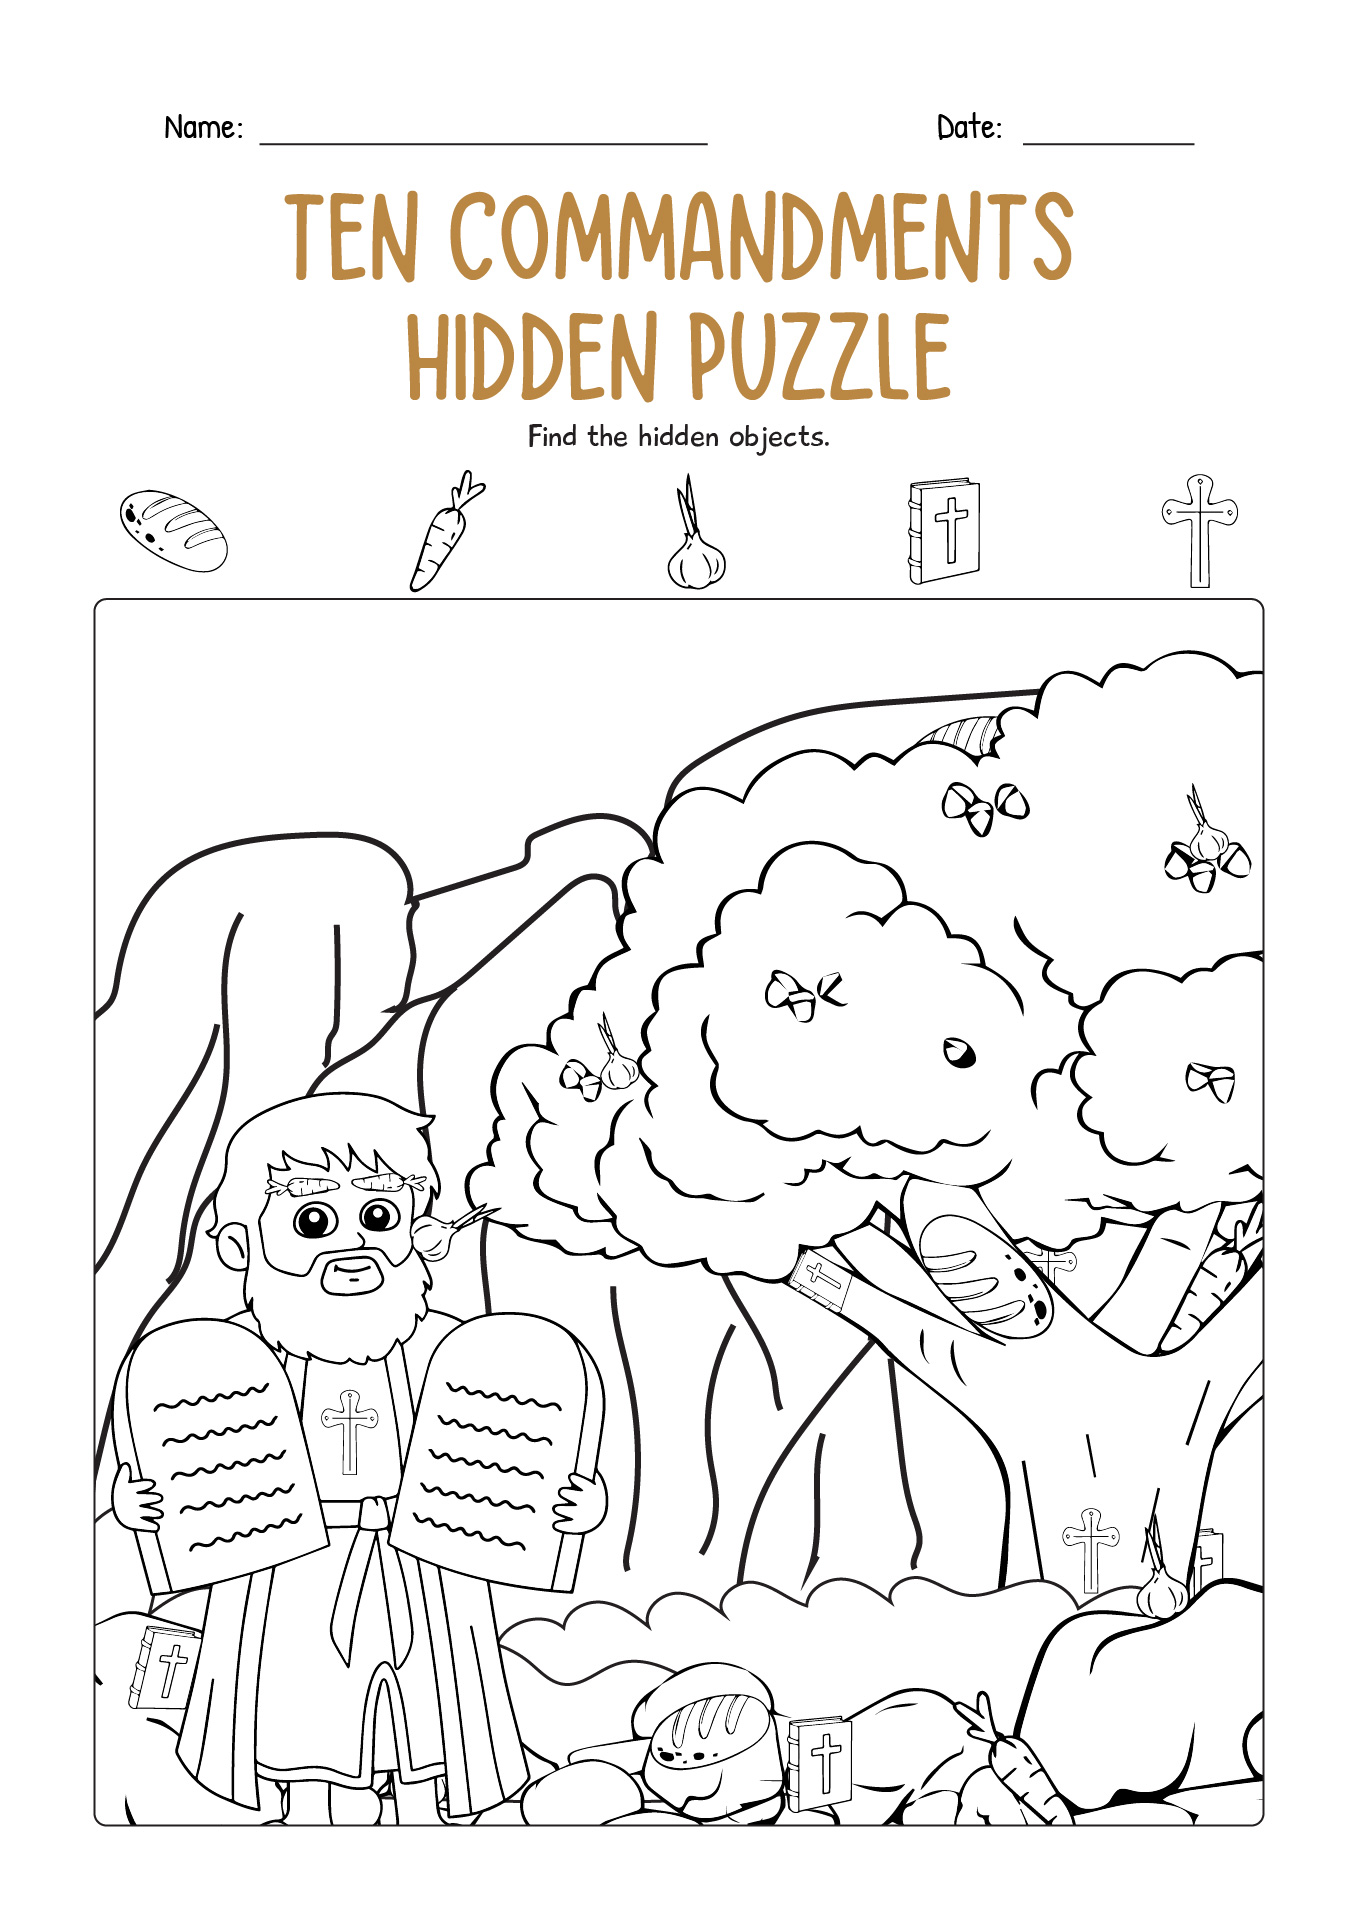 Ten Commandments Hidden Puzzle